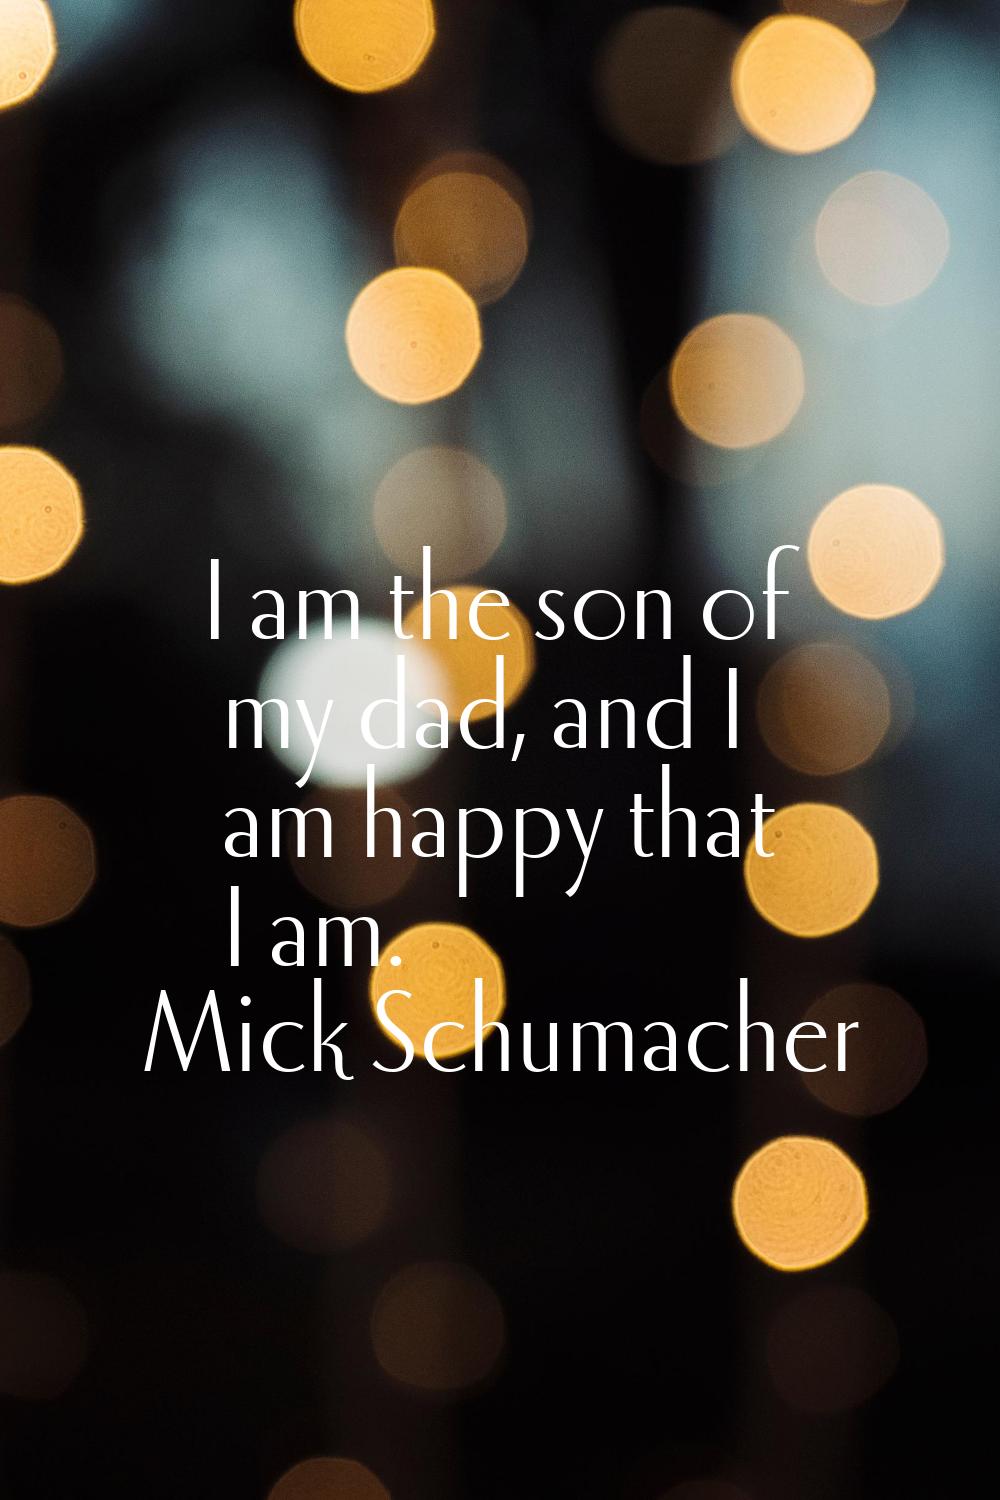 I am the son of my dad, and I am happy that I am.